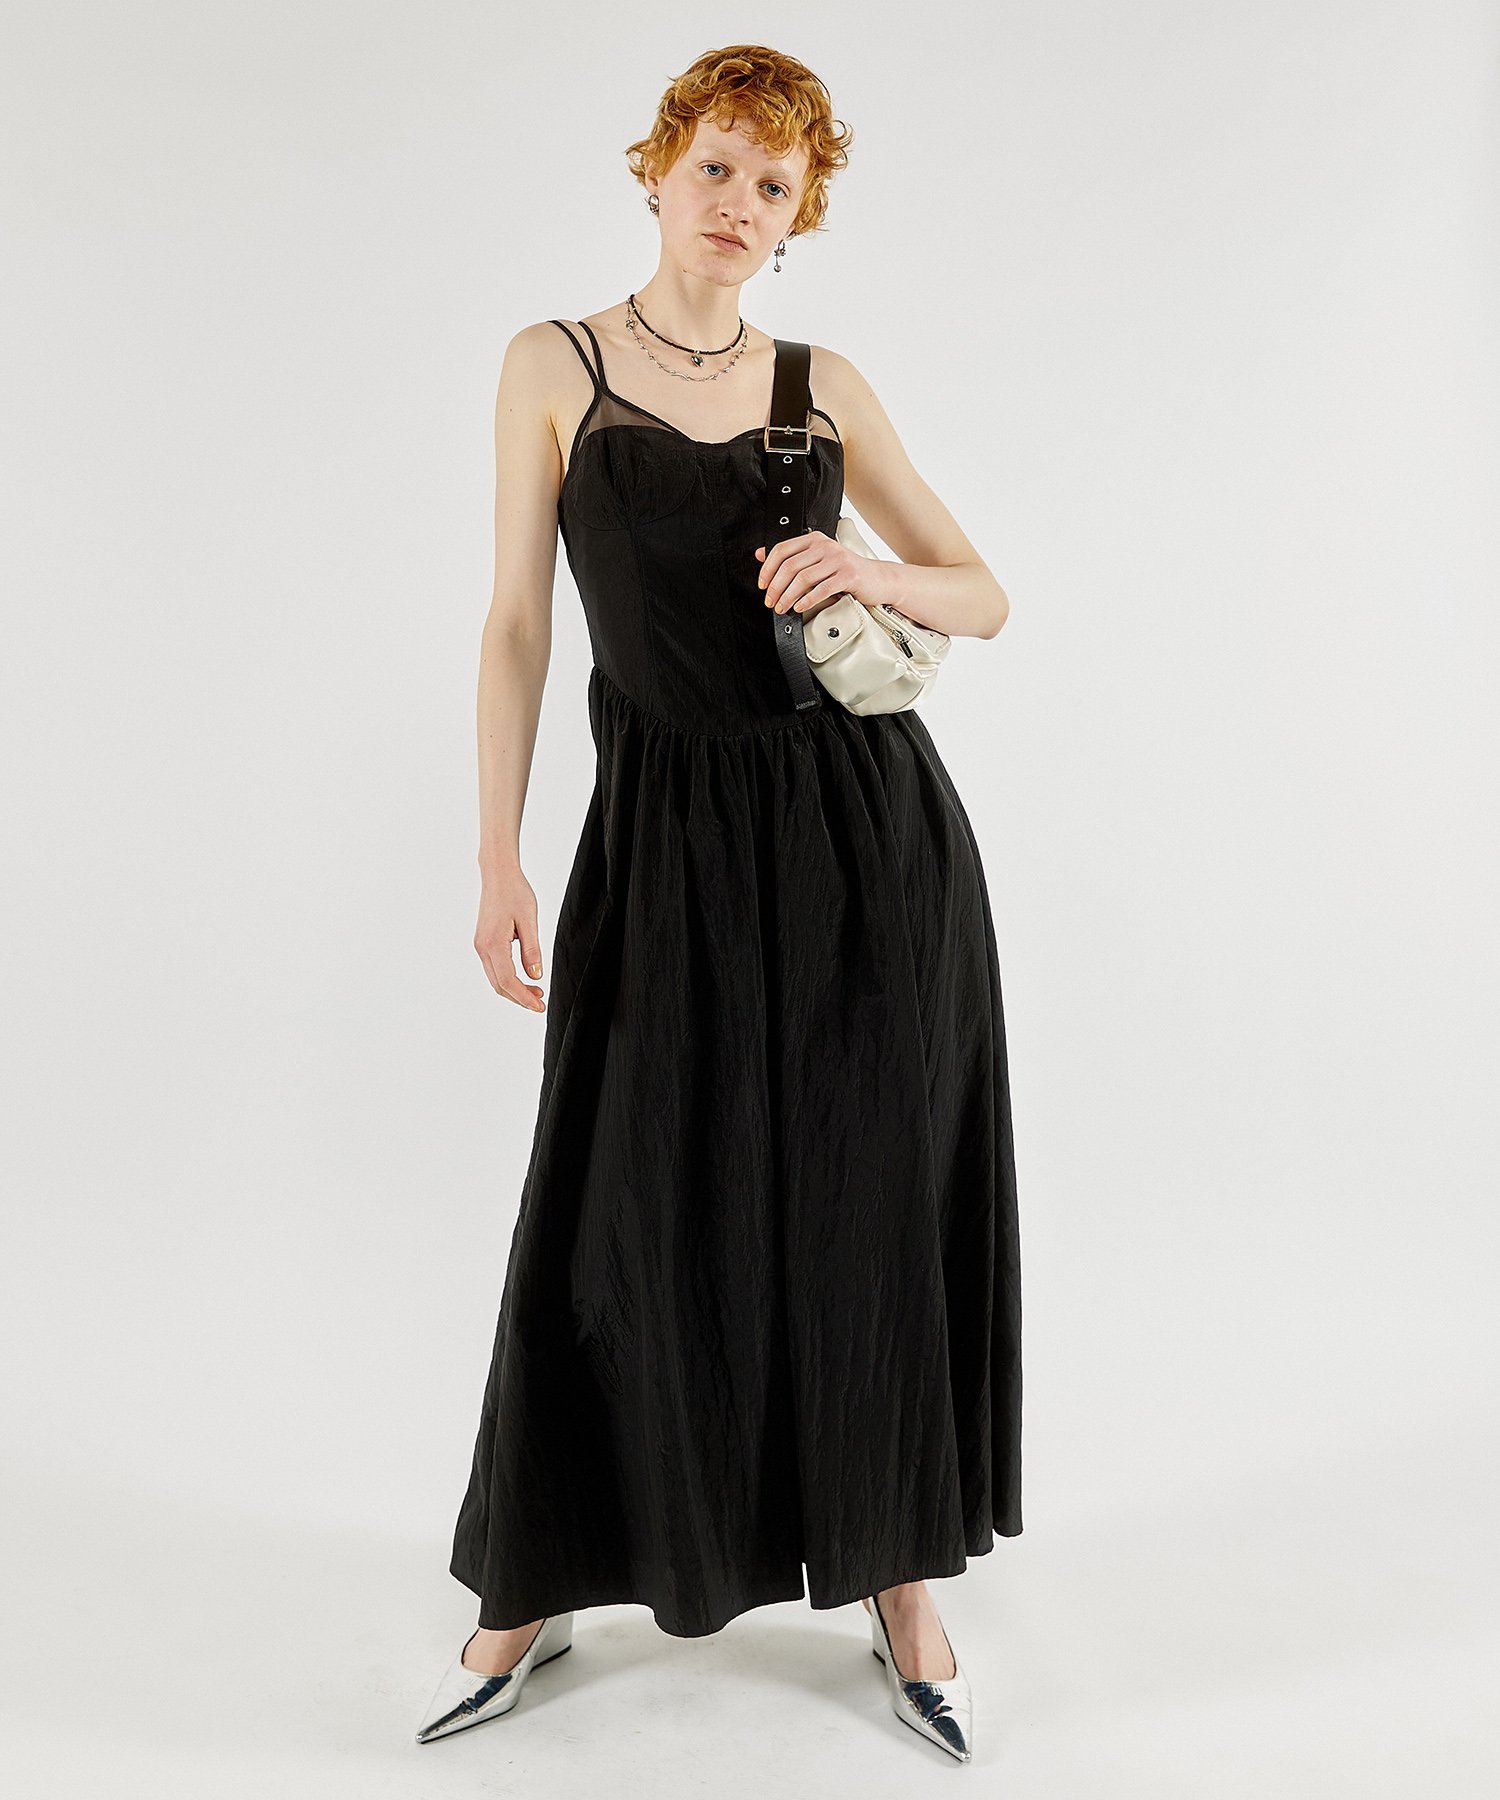 楽天Rakuten FashionMAISON SPECIAL Corset Camisole Dress メゾンスペシャル ワンピース・ドレス ワンピース ブラック オレンジ ブルー ベージュ【送料無料】